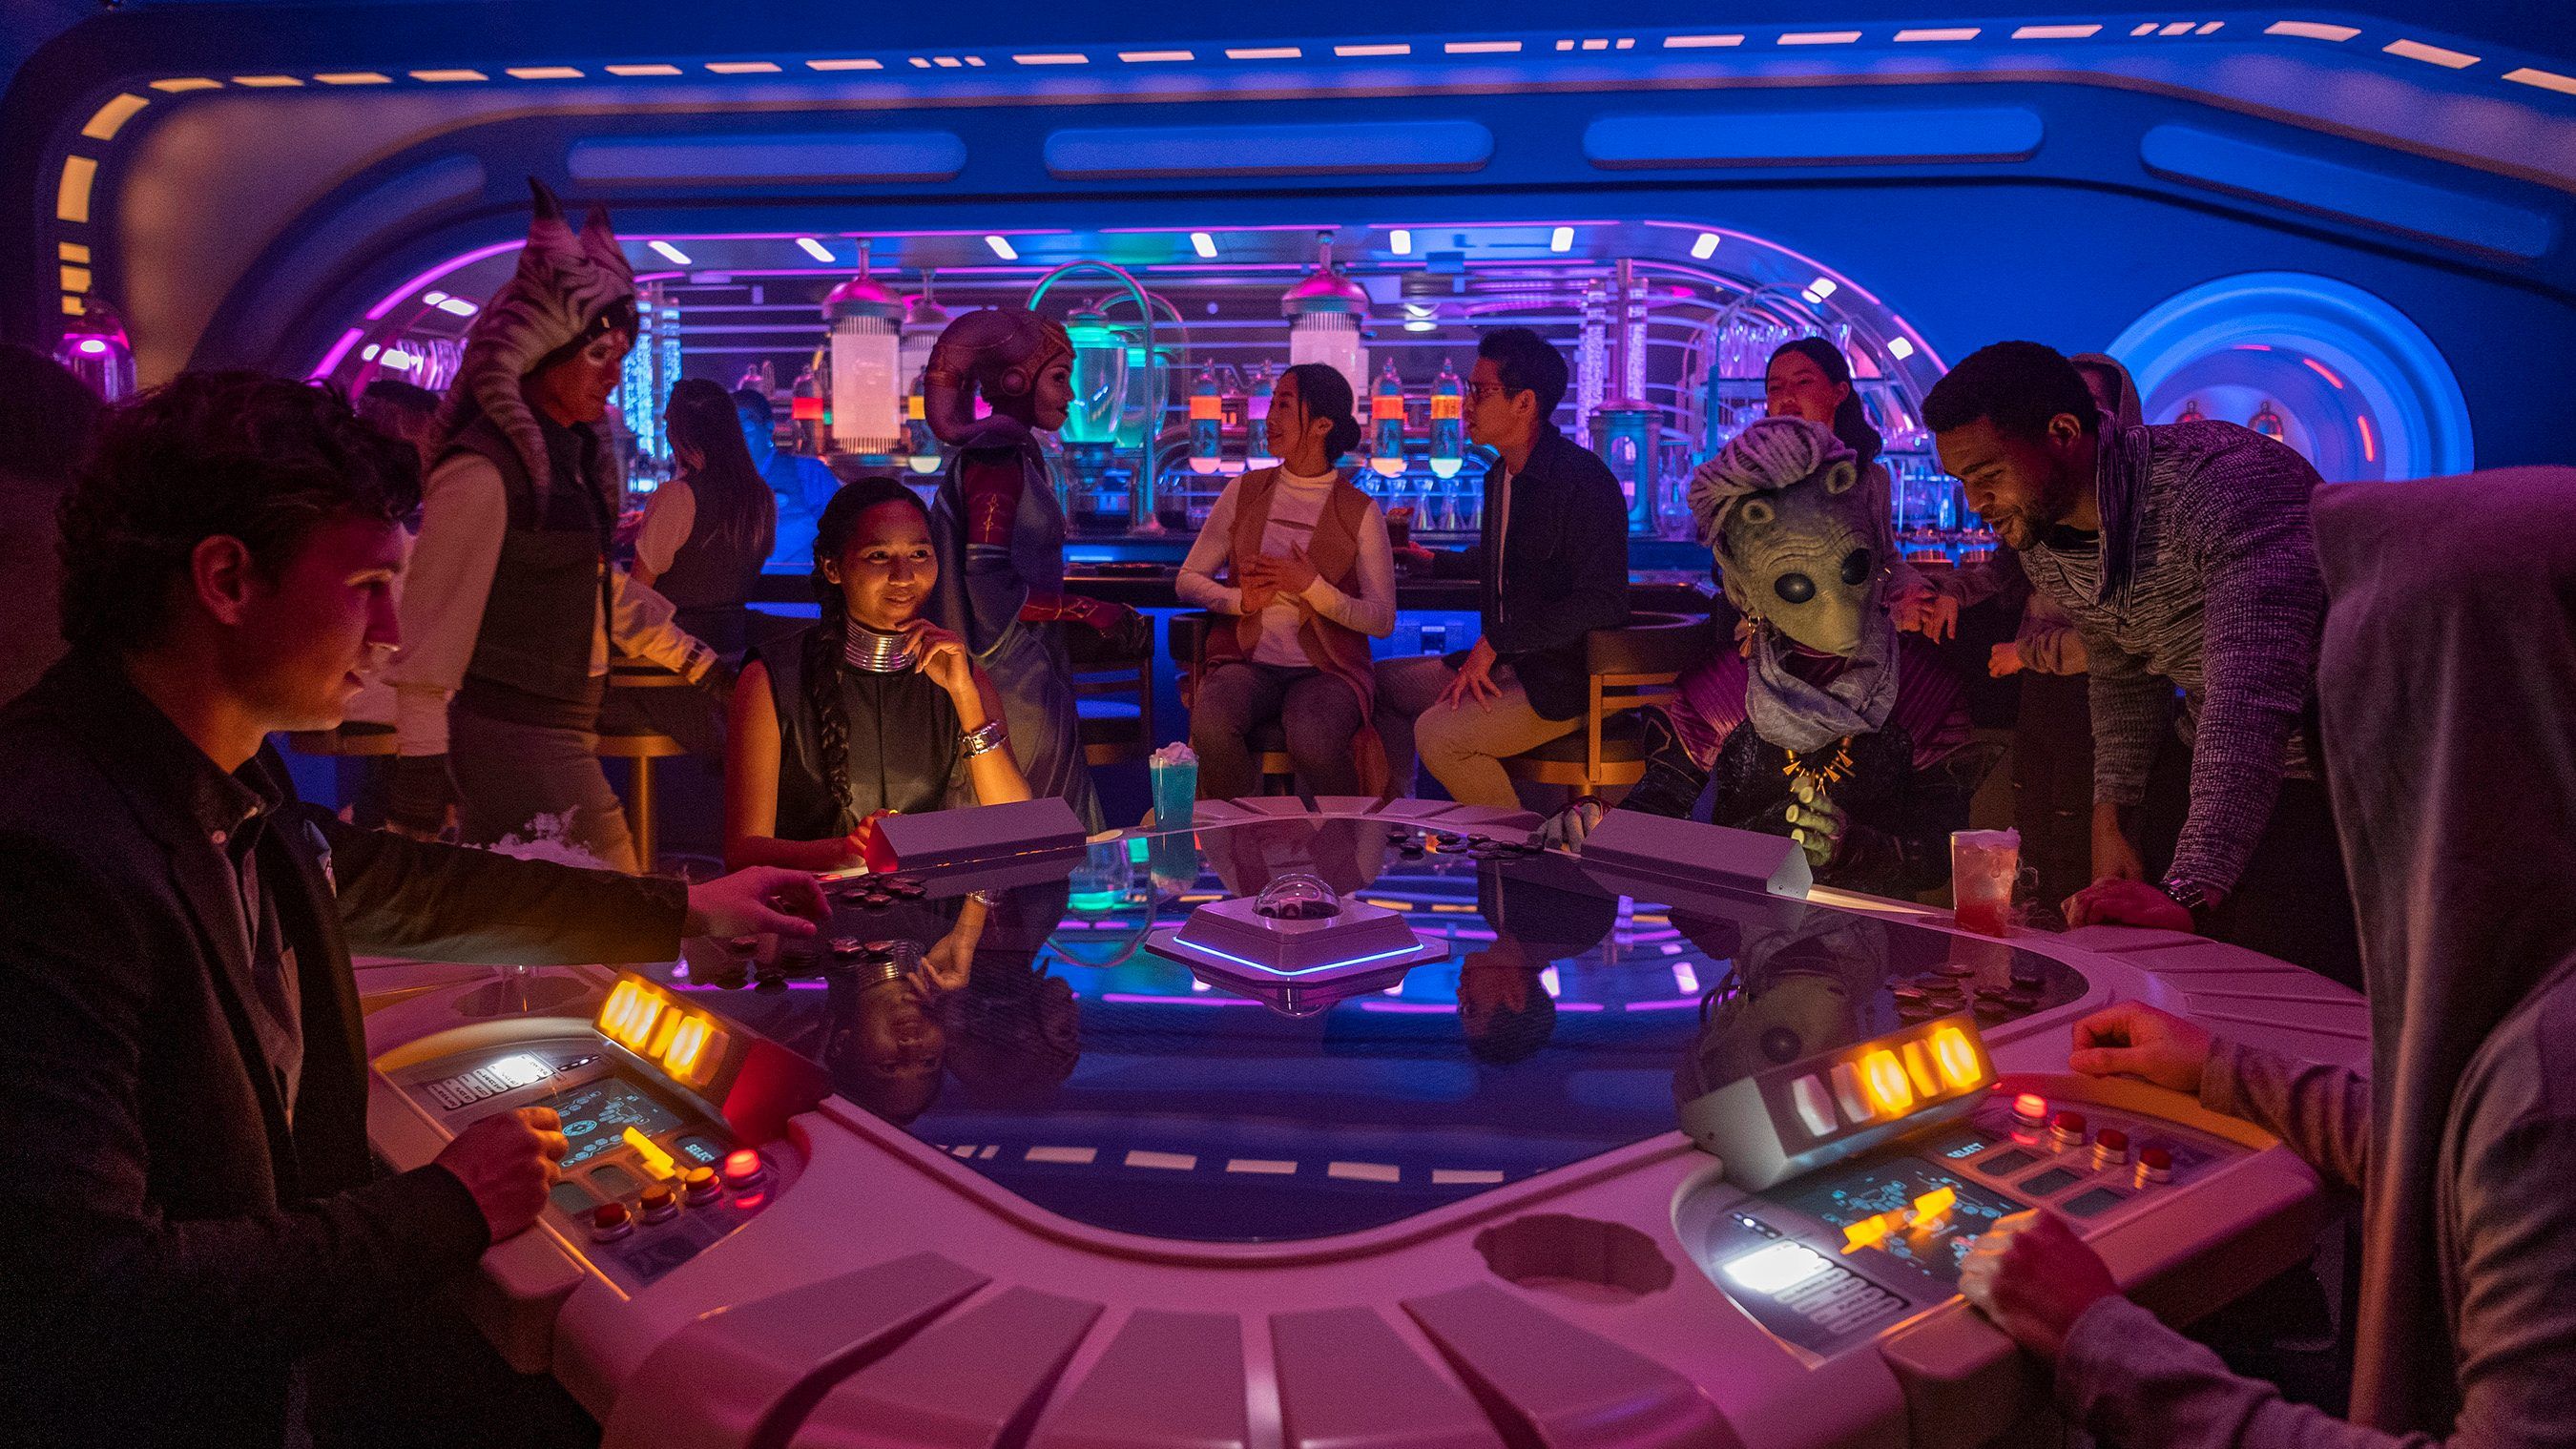 À peine un an après son ouverture, l'hôtel Star Wars de Disney ferme déjà ses portes